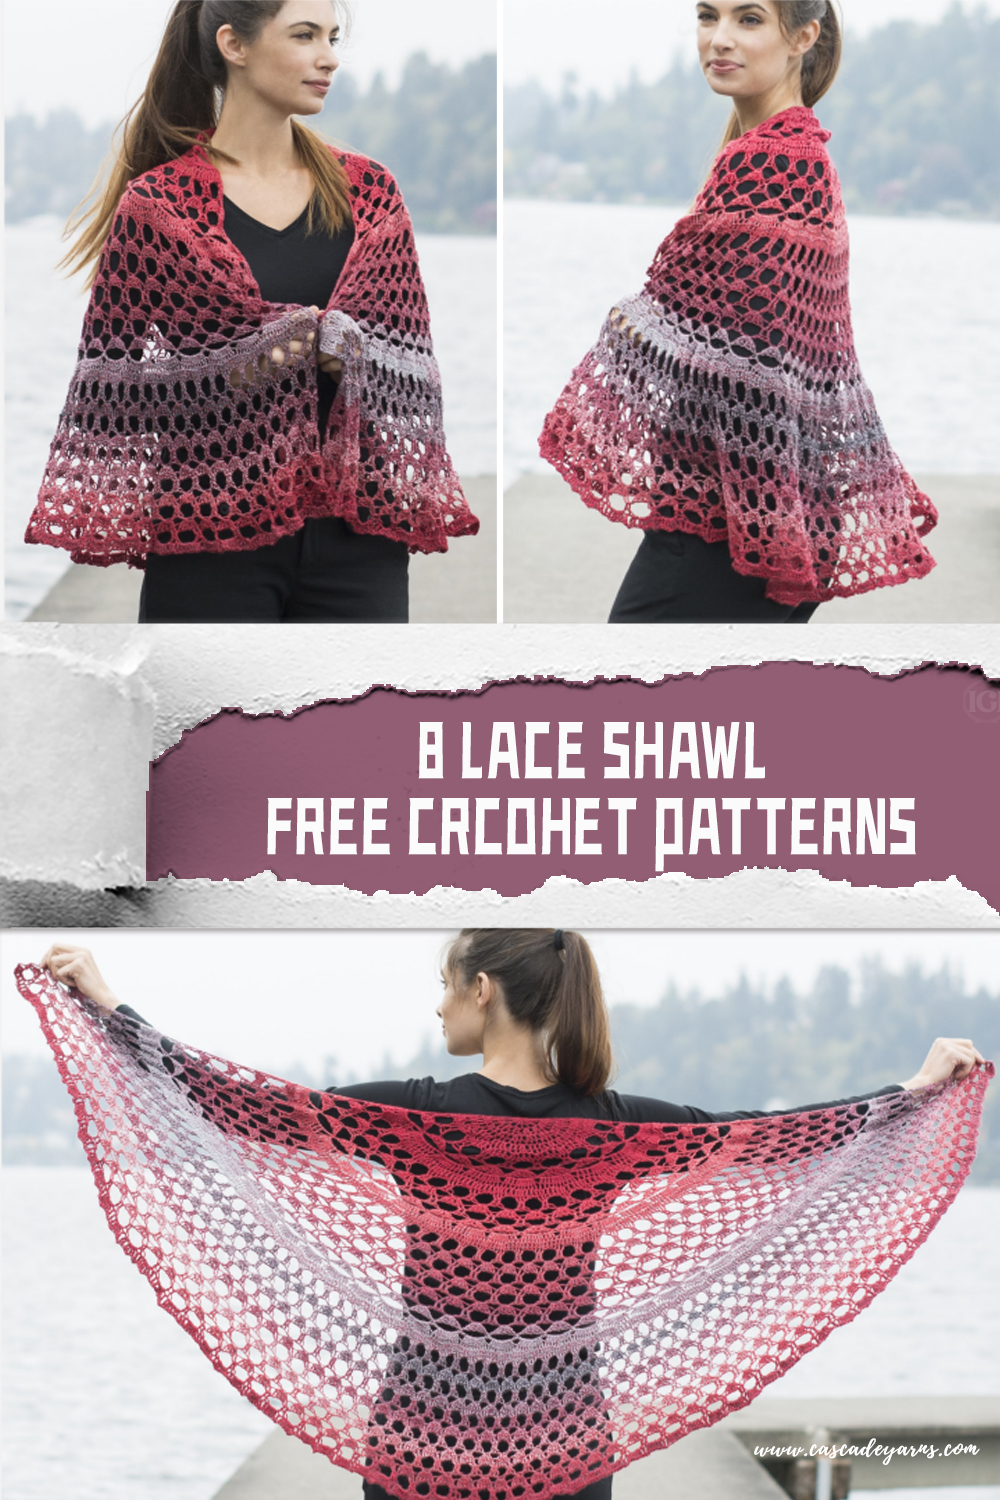 8 Lace Shawl FREE Crcohet Patterns